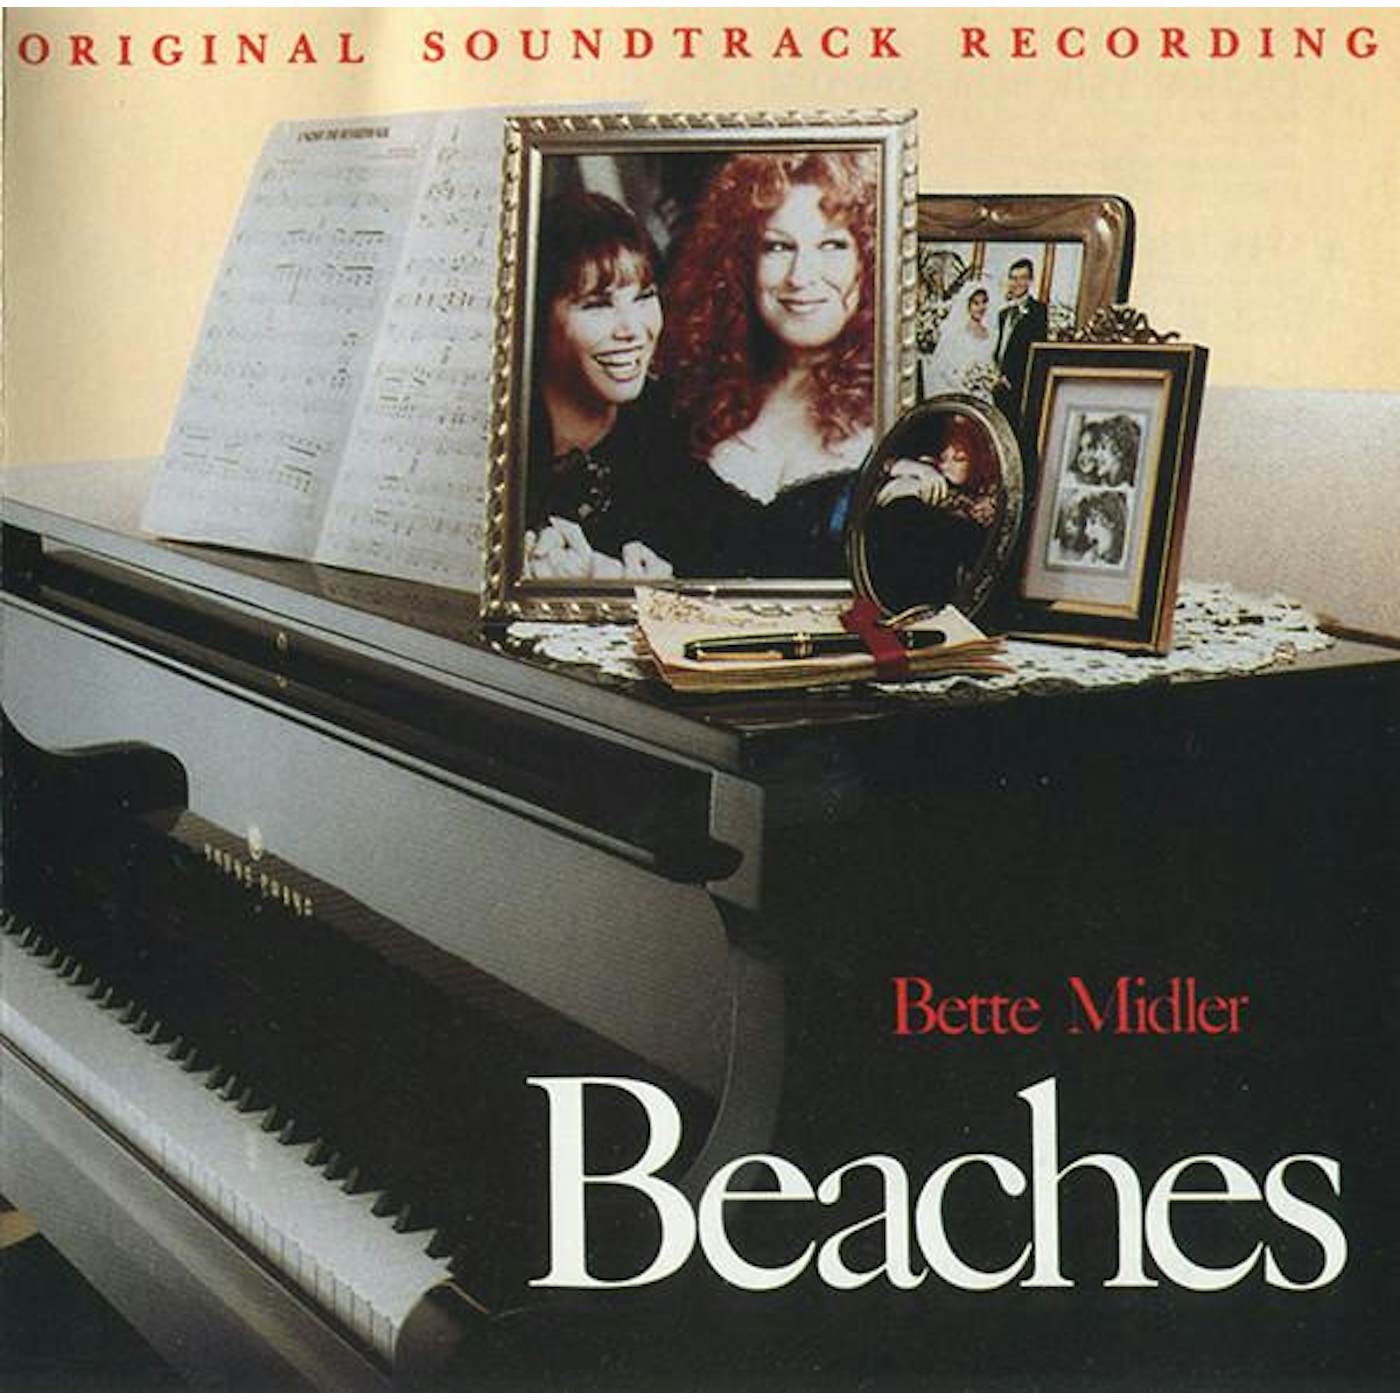 Bette Midler BEACHES - SOUNDTRACK CD